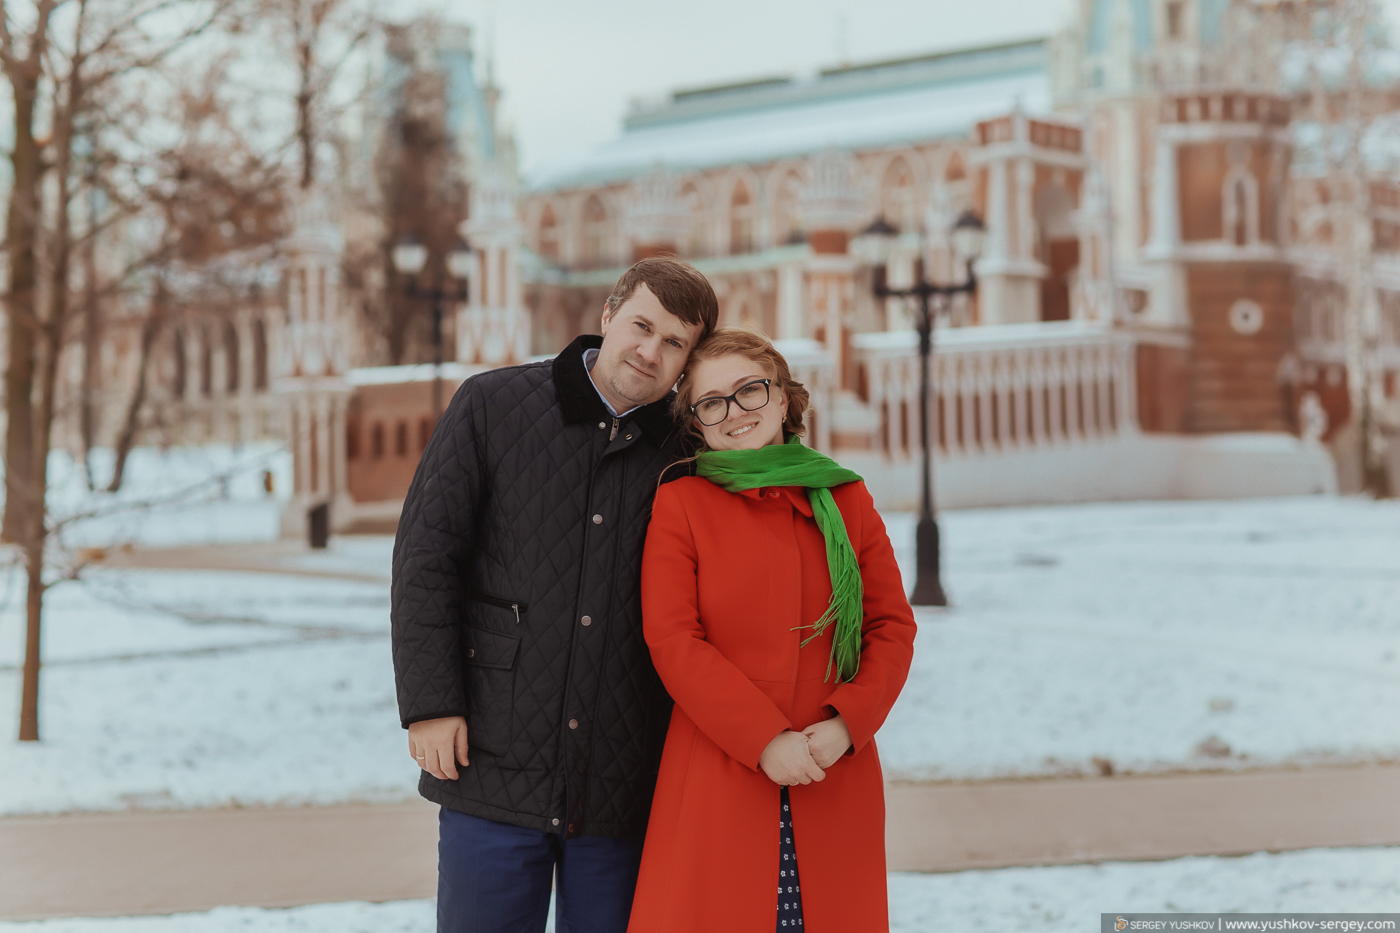 Фотосессия Свадьба для двоих в Москве. Царицыно. Зима. Фотограф - Сергей Юшков